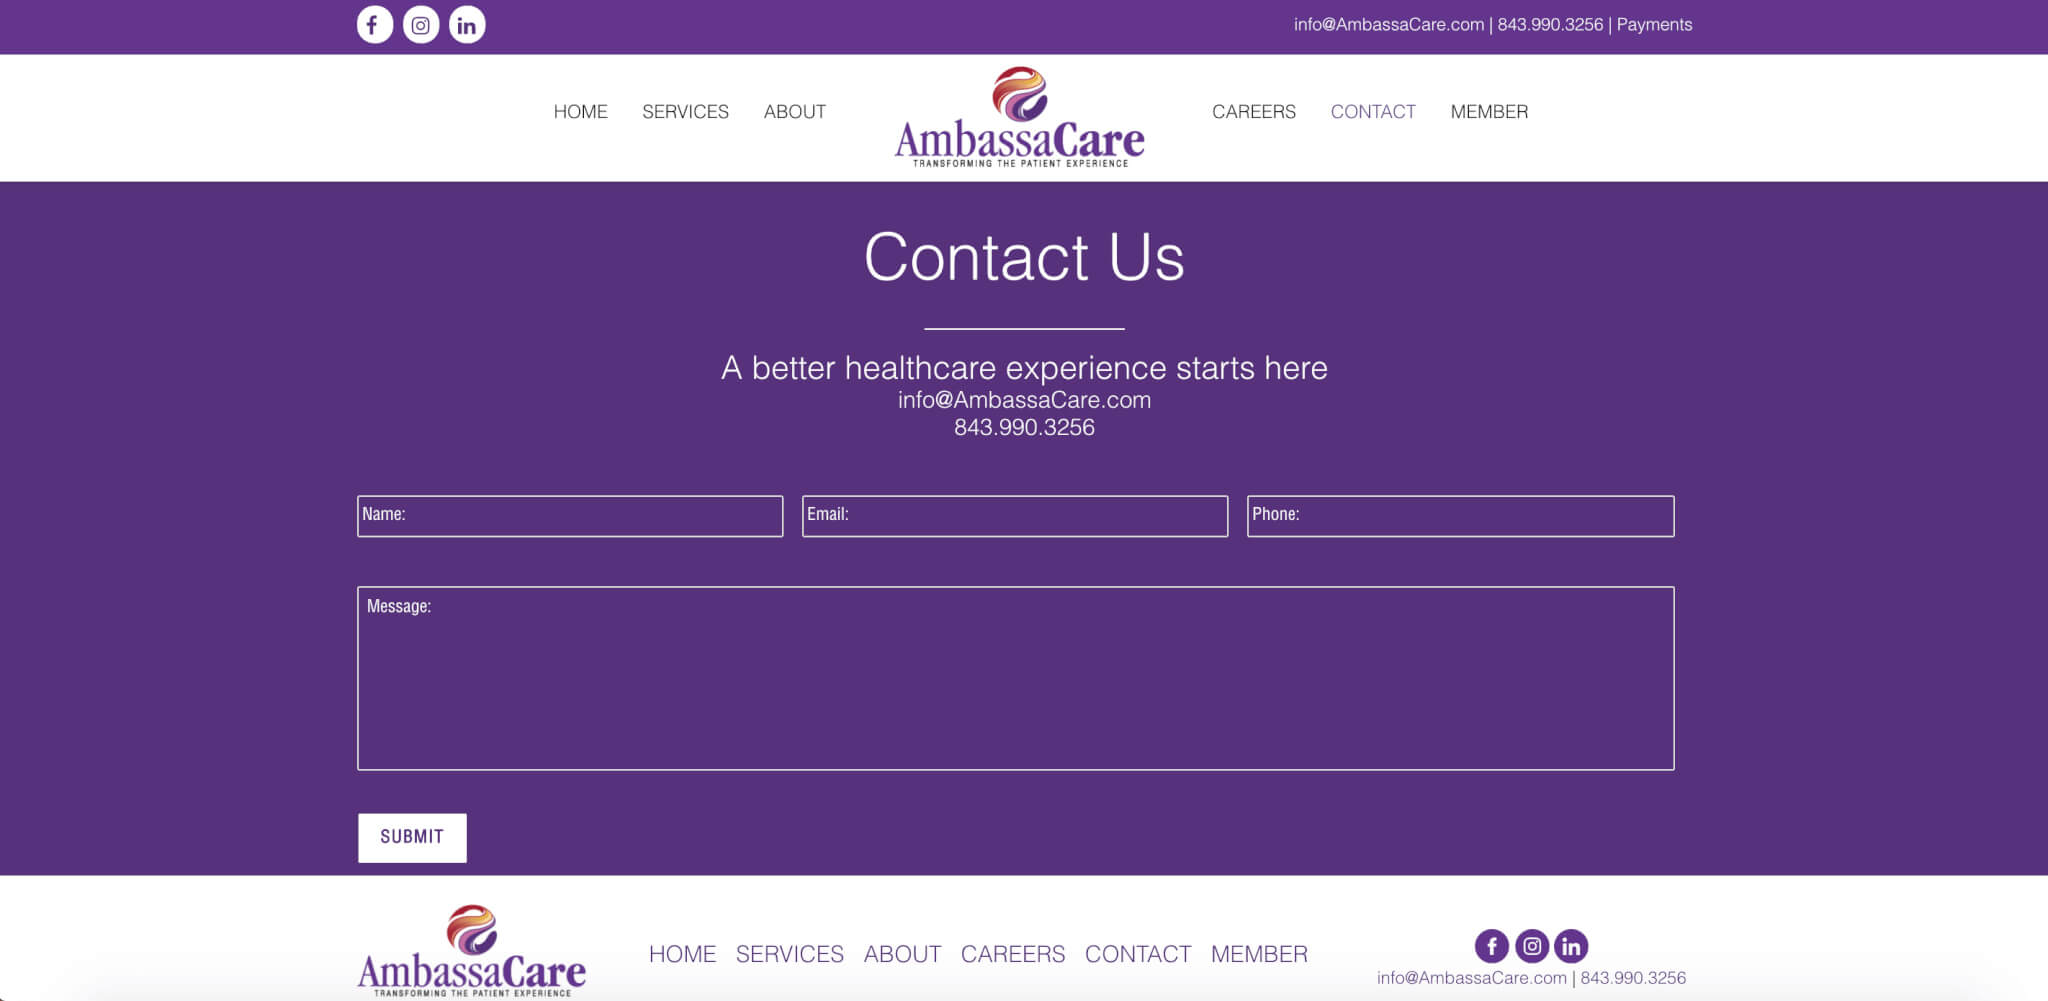 ambassacare medical website design in charleston